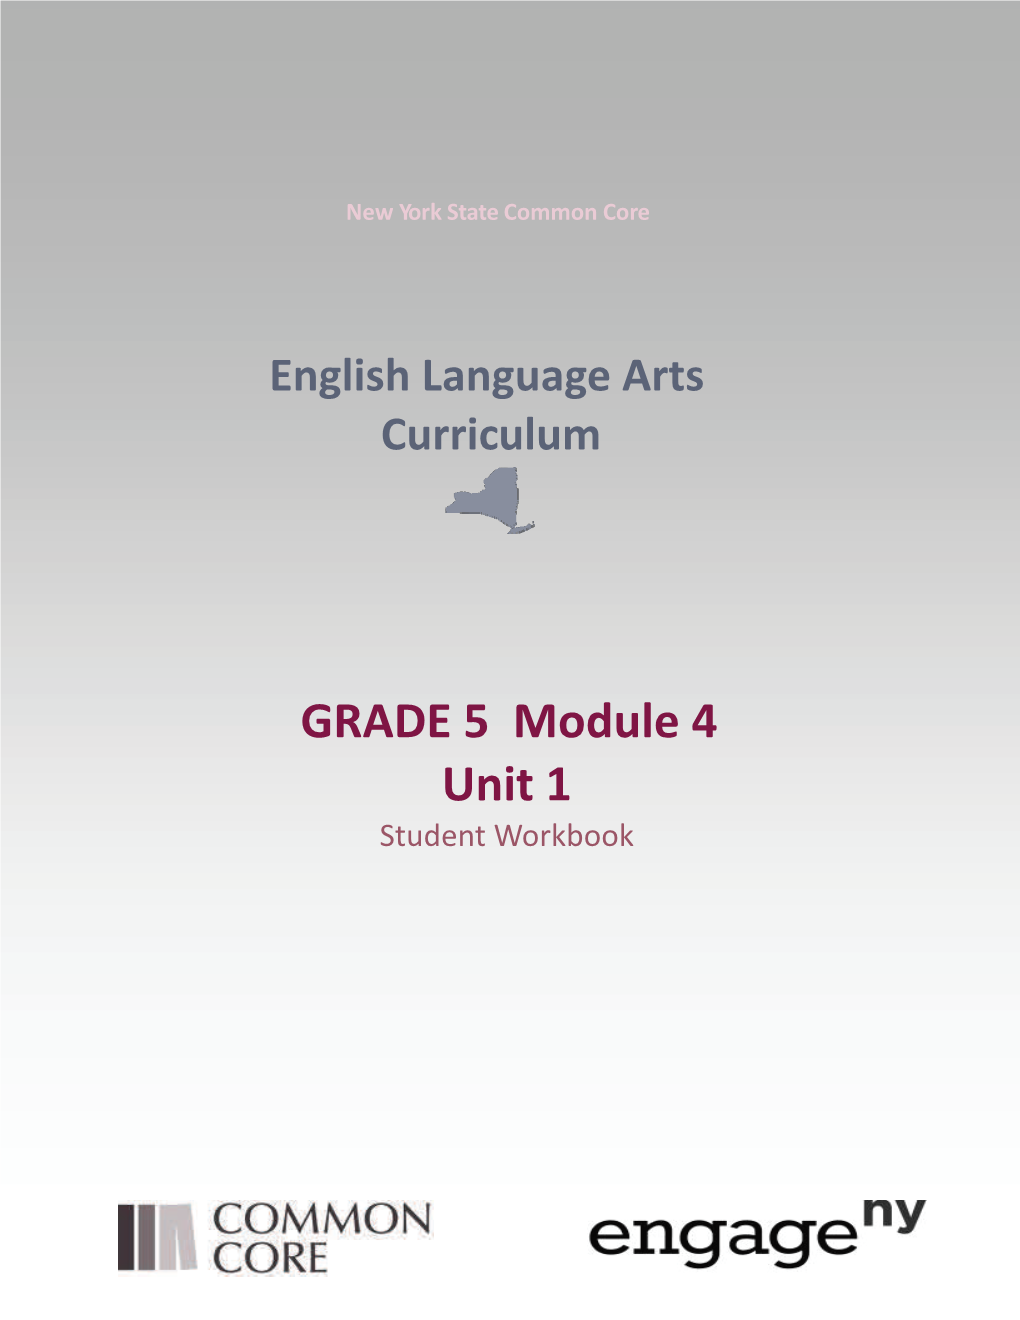 GRADE 5 Module 4 Unit 1 Student Workbook